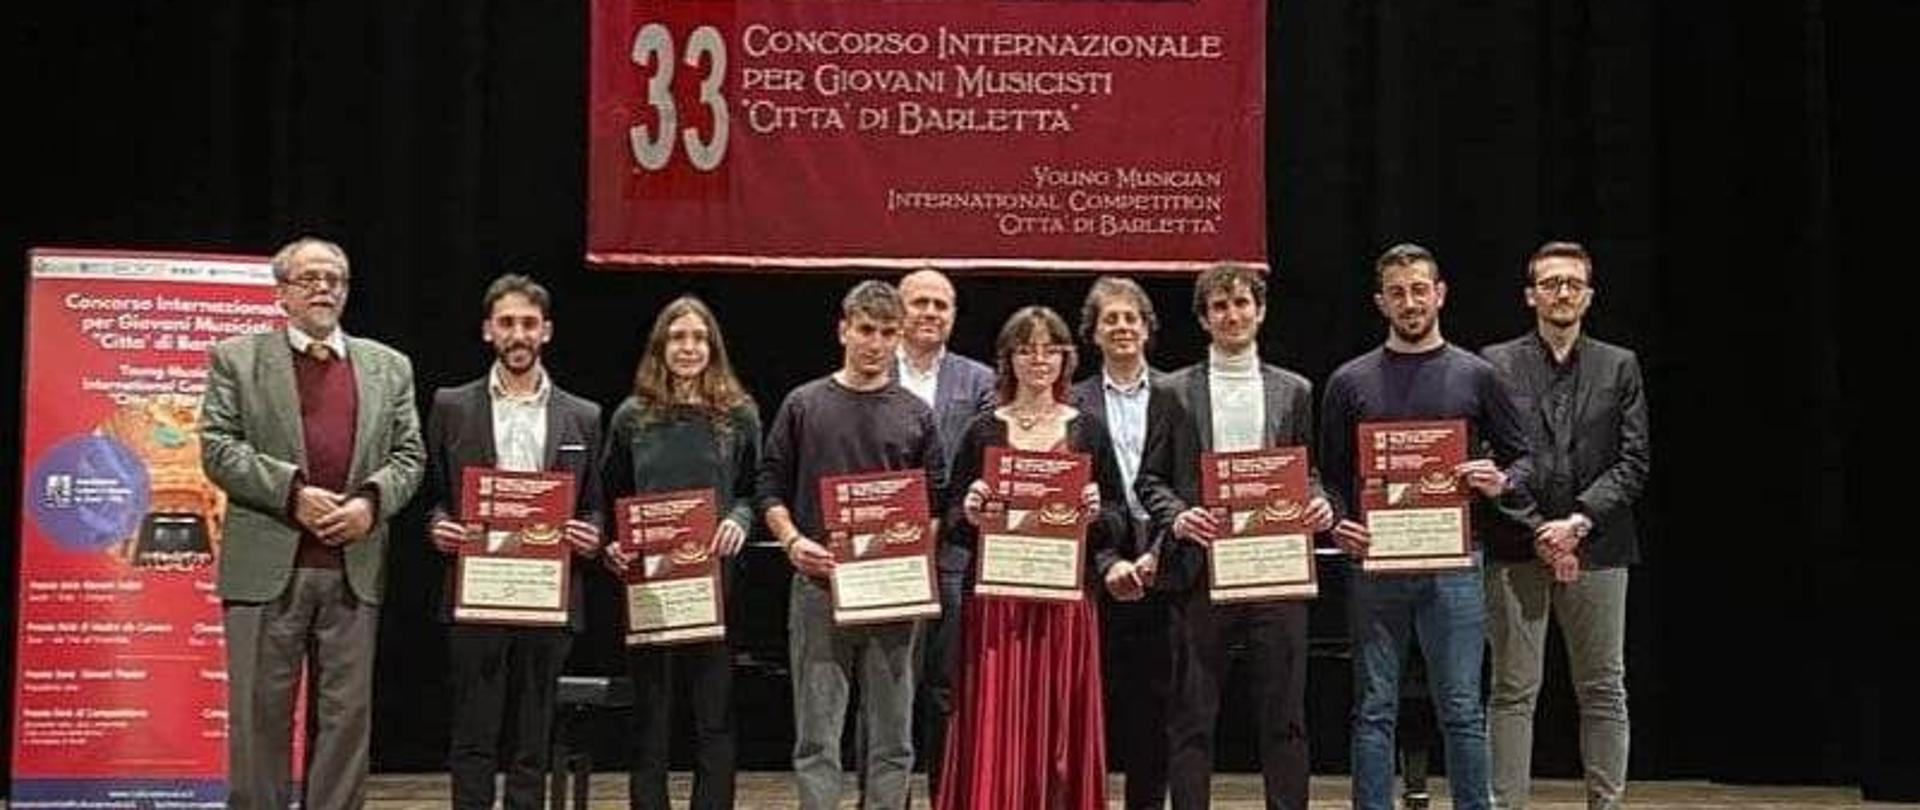 Zdjęcie kolorowe. Uczniowie z dyplomami oraz jurorzy na scenie. W tle baner konkursu (biały napis na czerwonym tle) o treści: "33 Concorso Internaziole per Giovani Musicisti "Citta di Barletta".